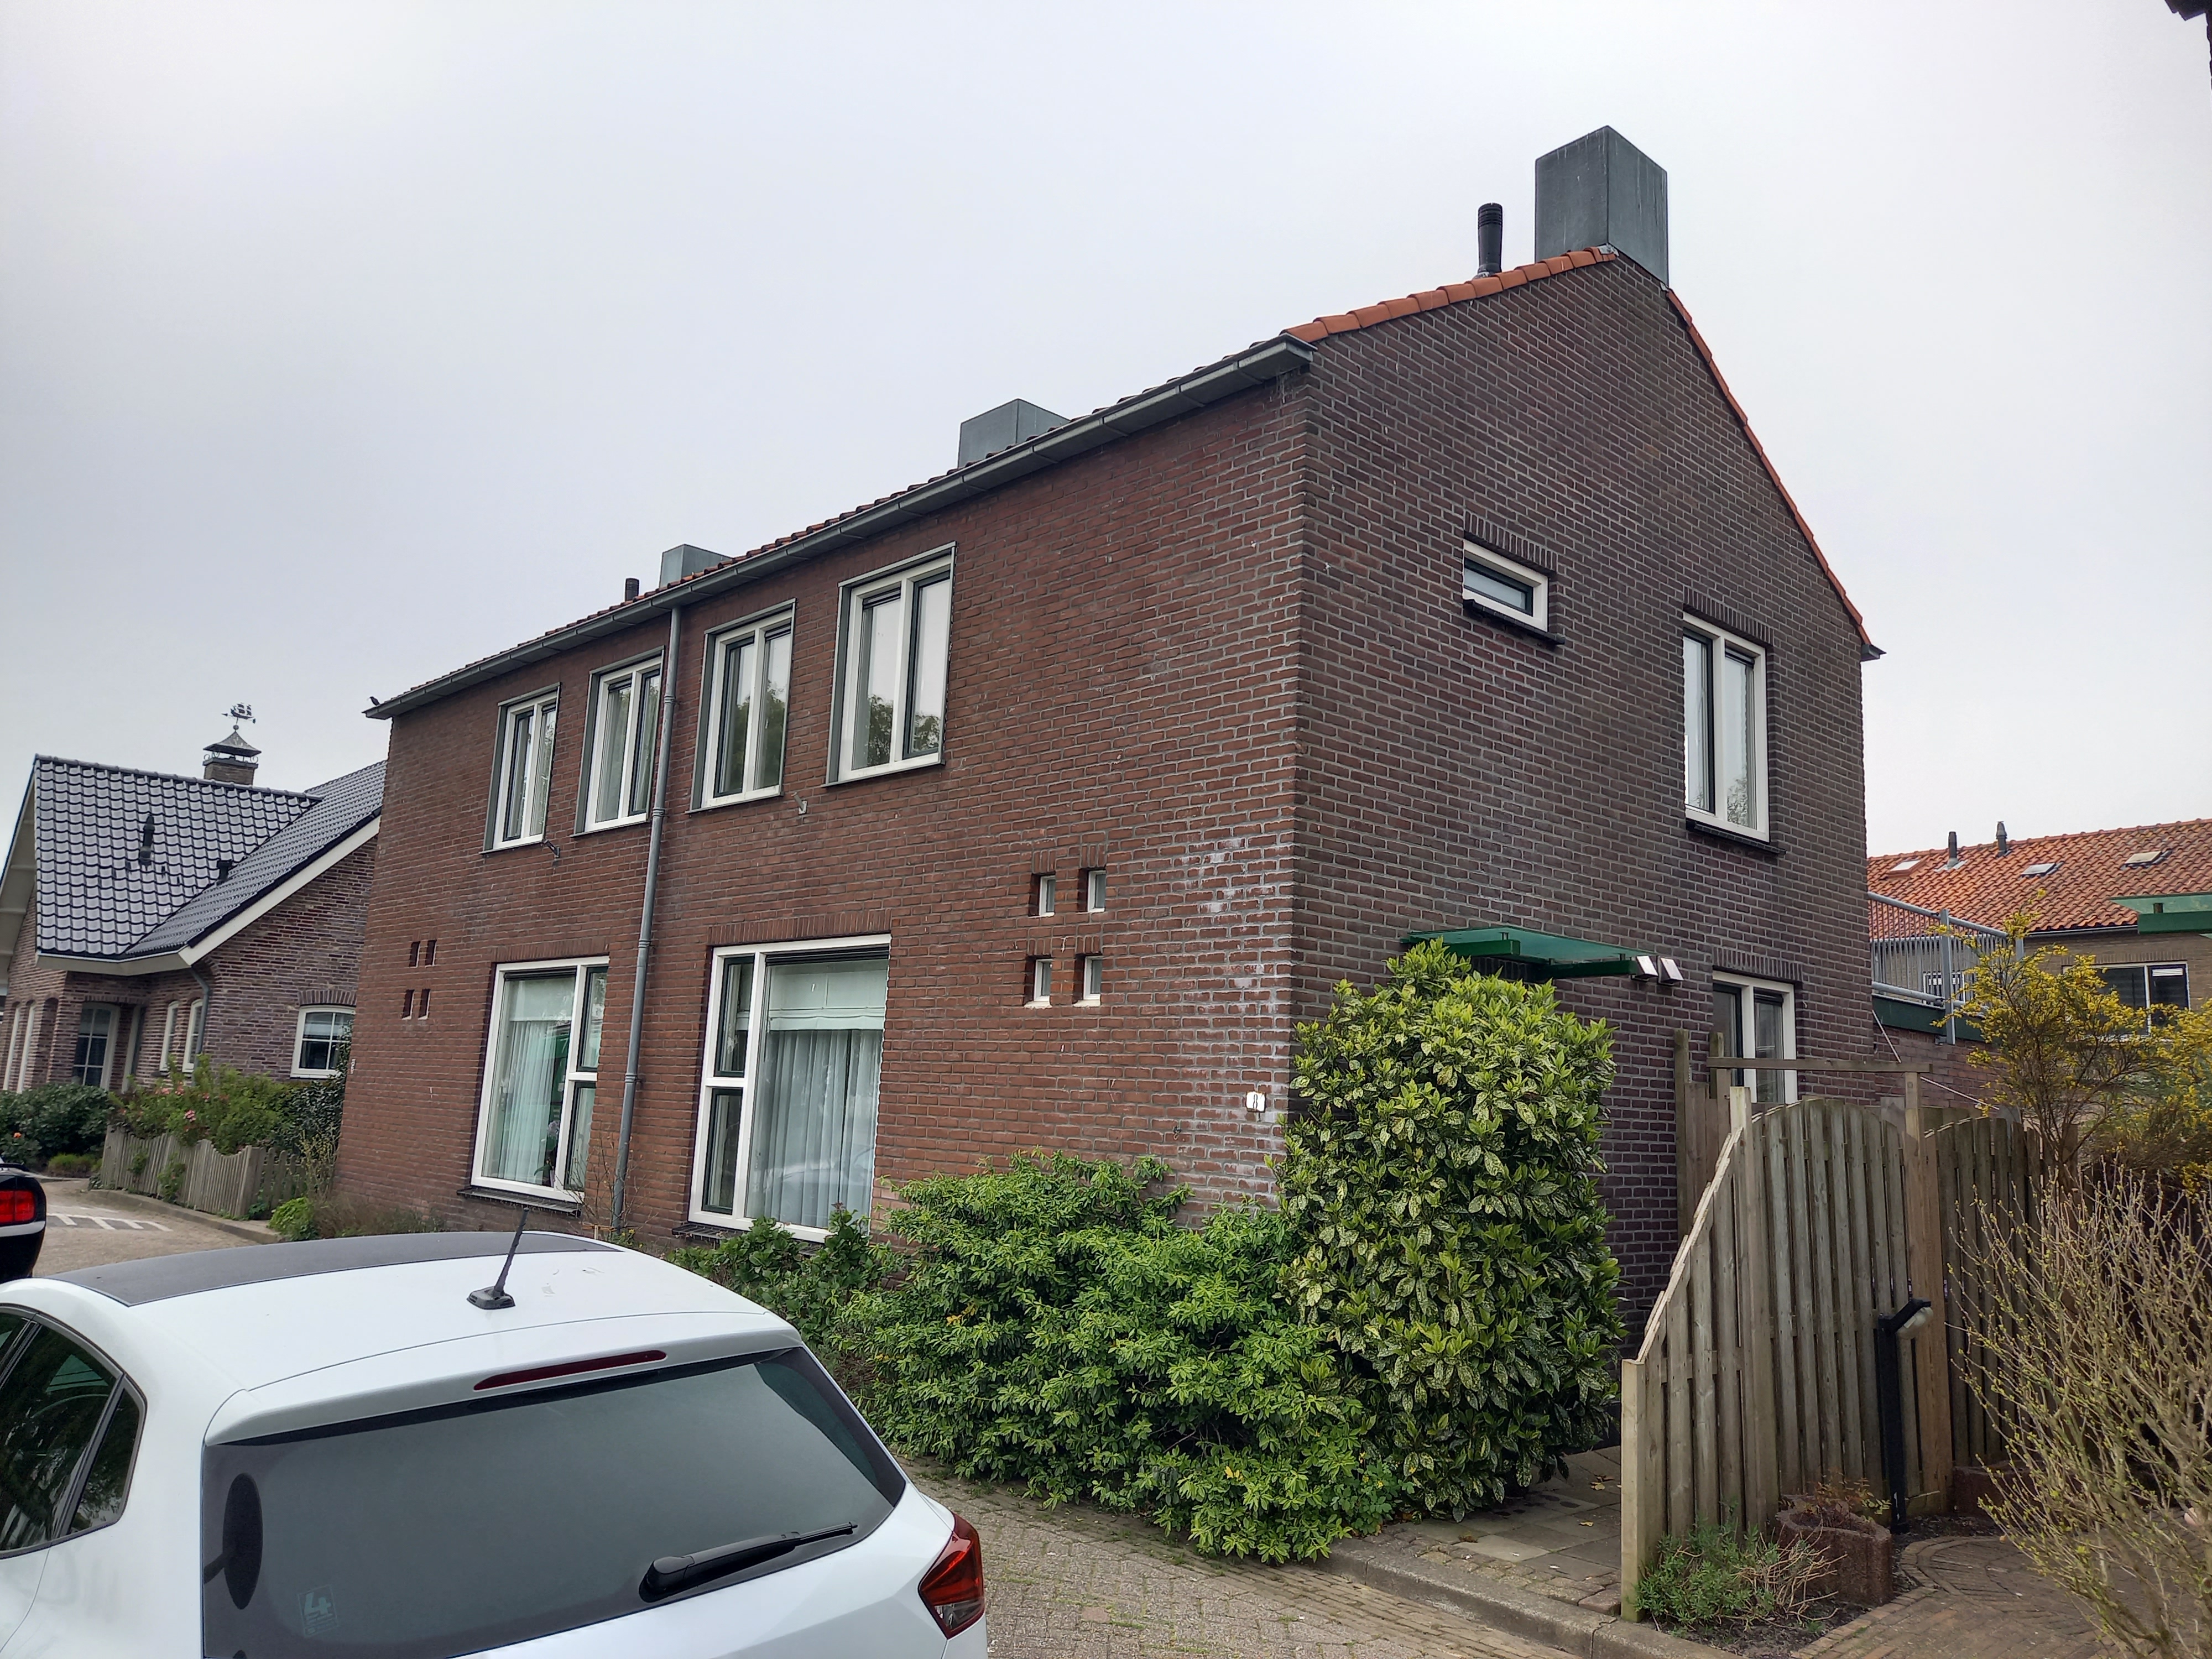 Van Leeuwenhoekweg 9, 2731 AB Benthuizen, Nederland